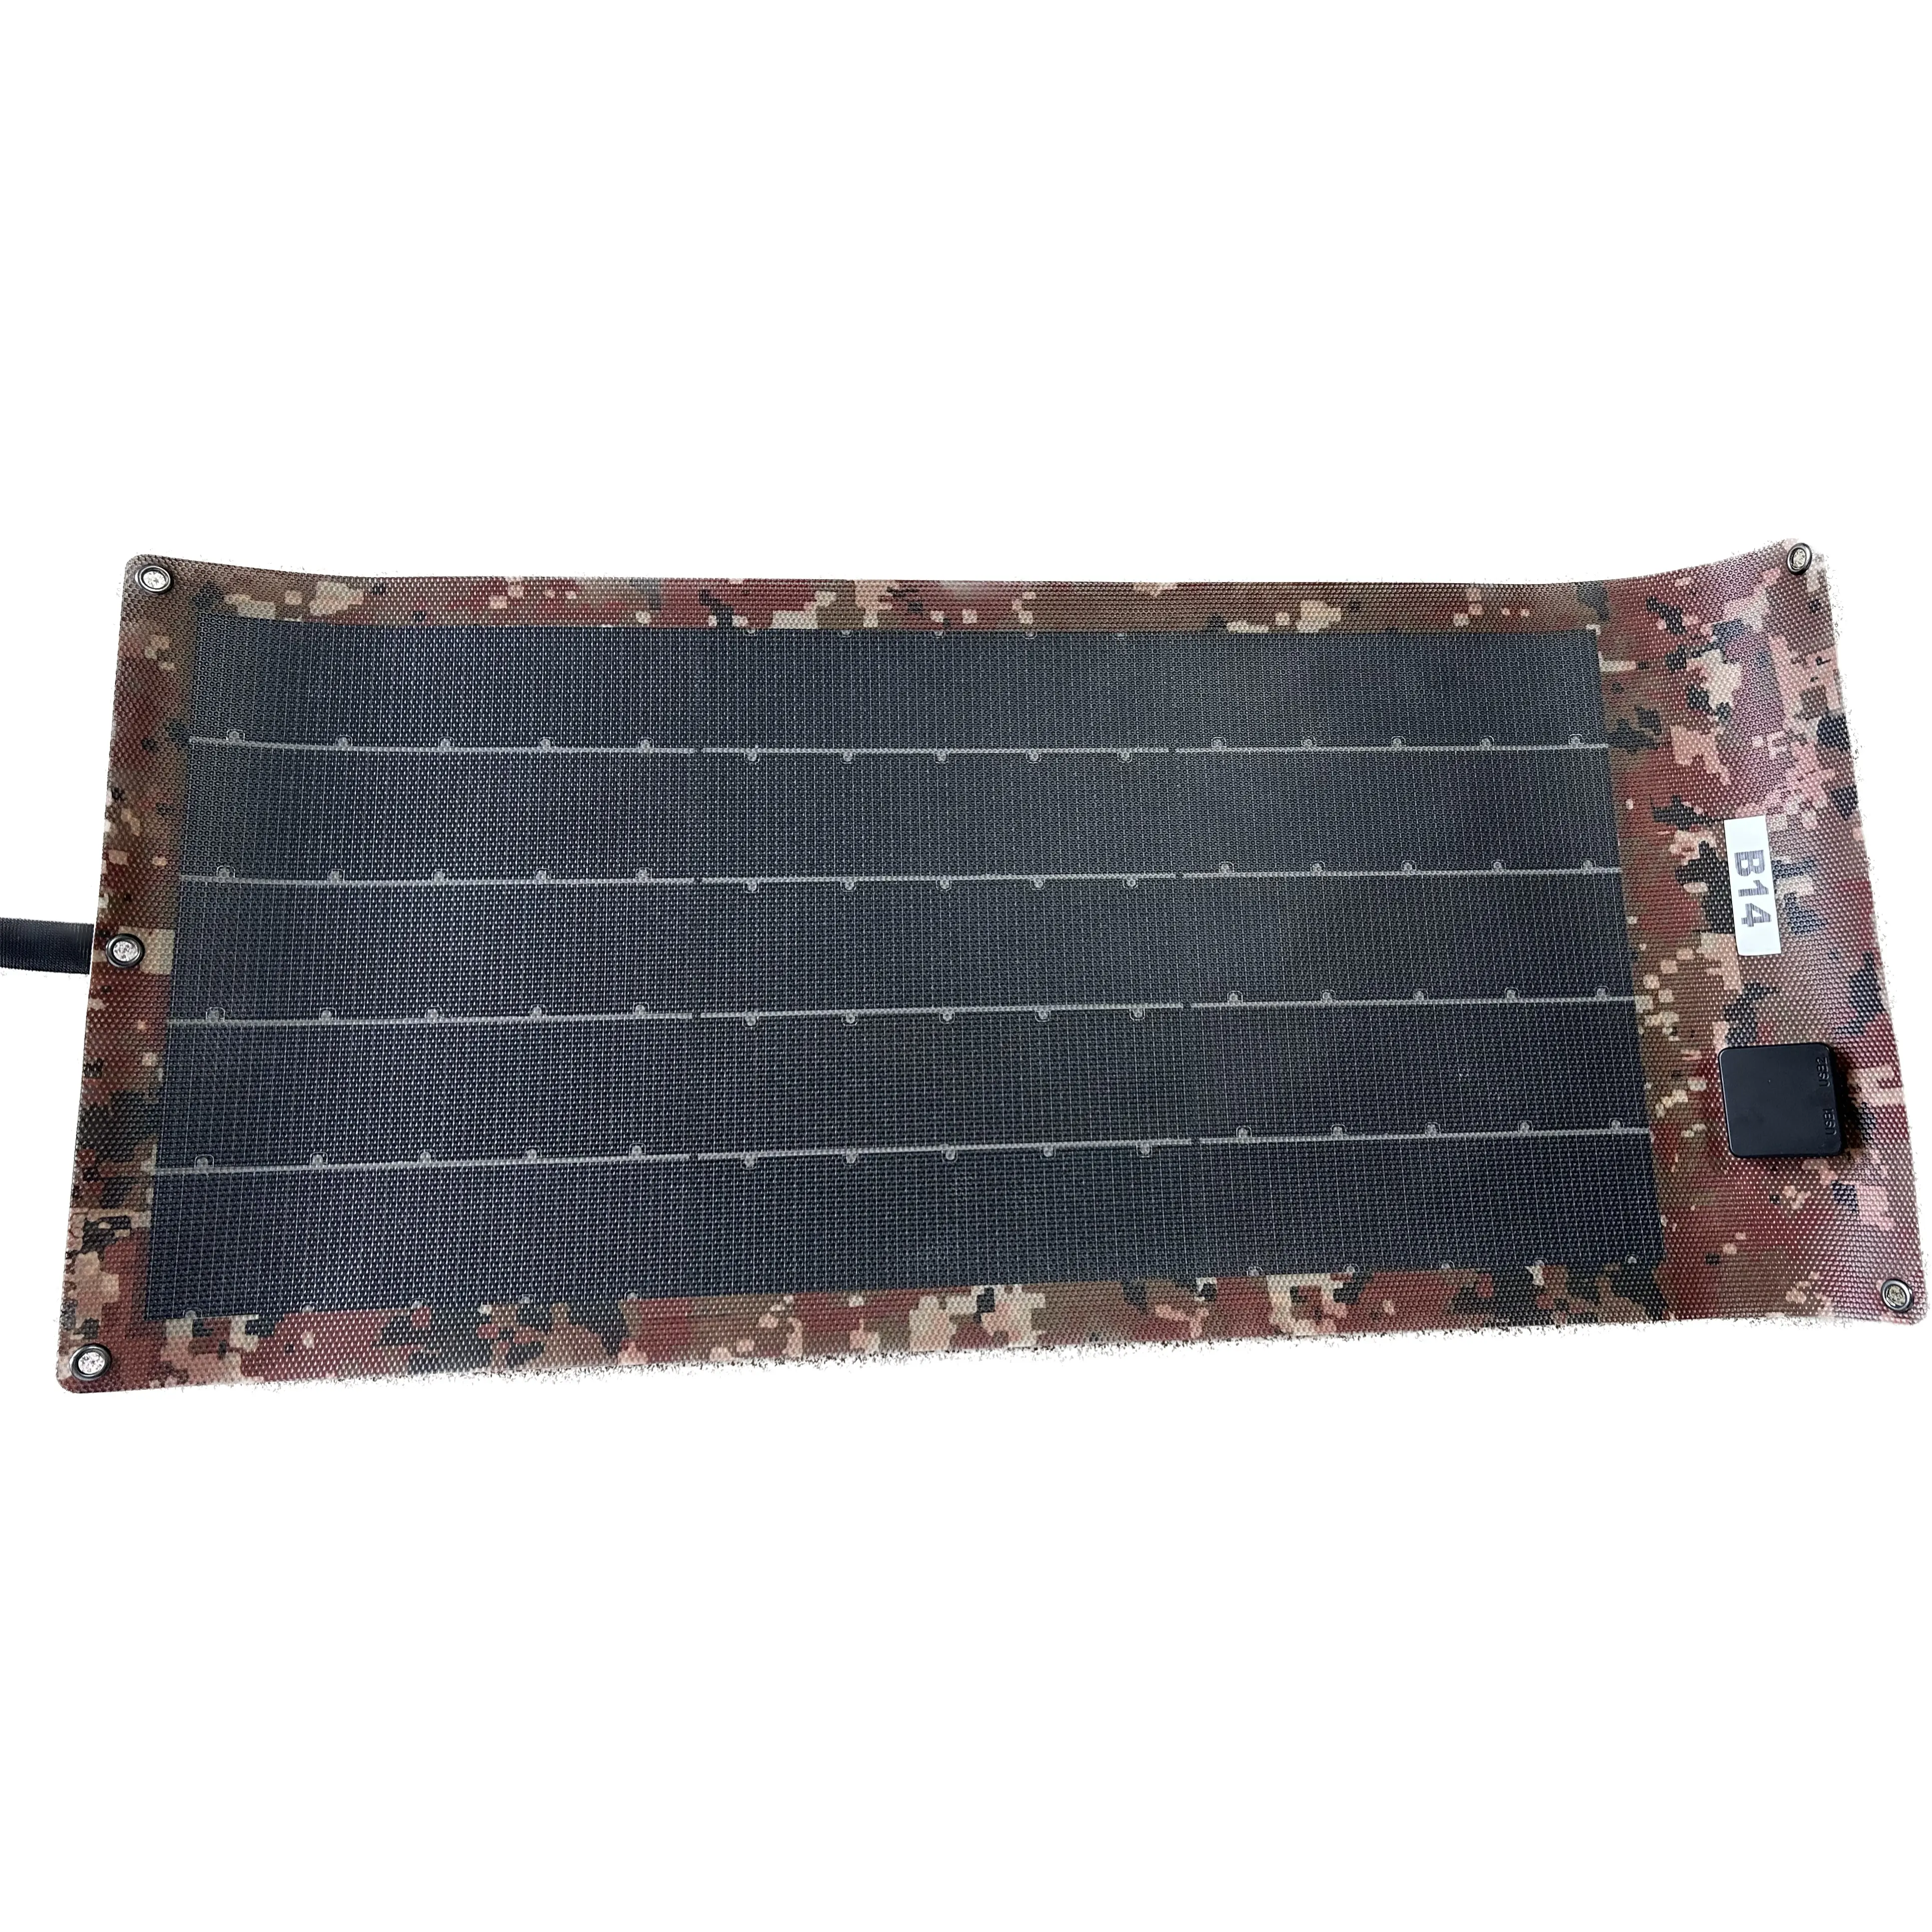 Commercio all'ingrosso CIGS flessibile a film sottile solare portatile borsa di ricarica esterna pieghevole mimetica pieghevole borsa pannello solare CIGS flessibile